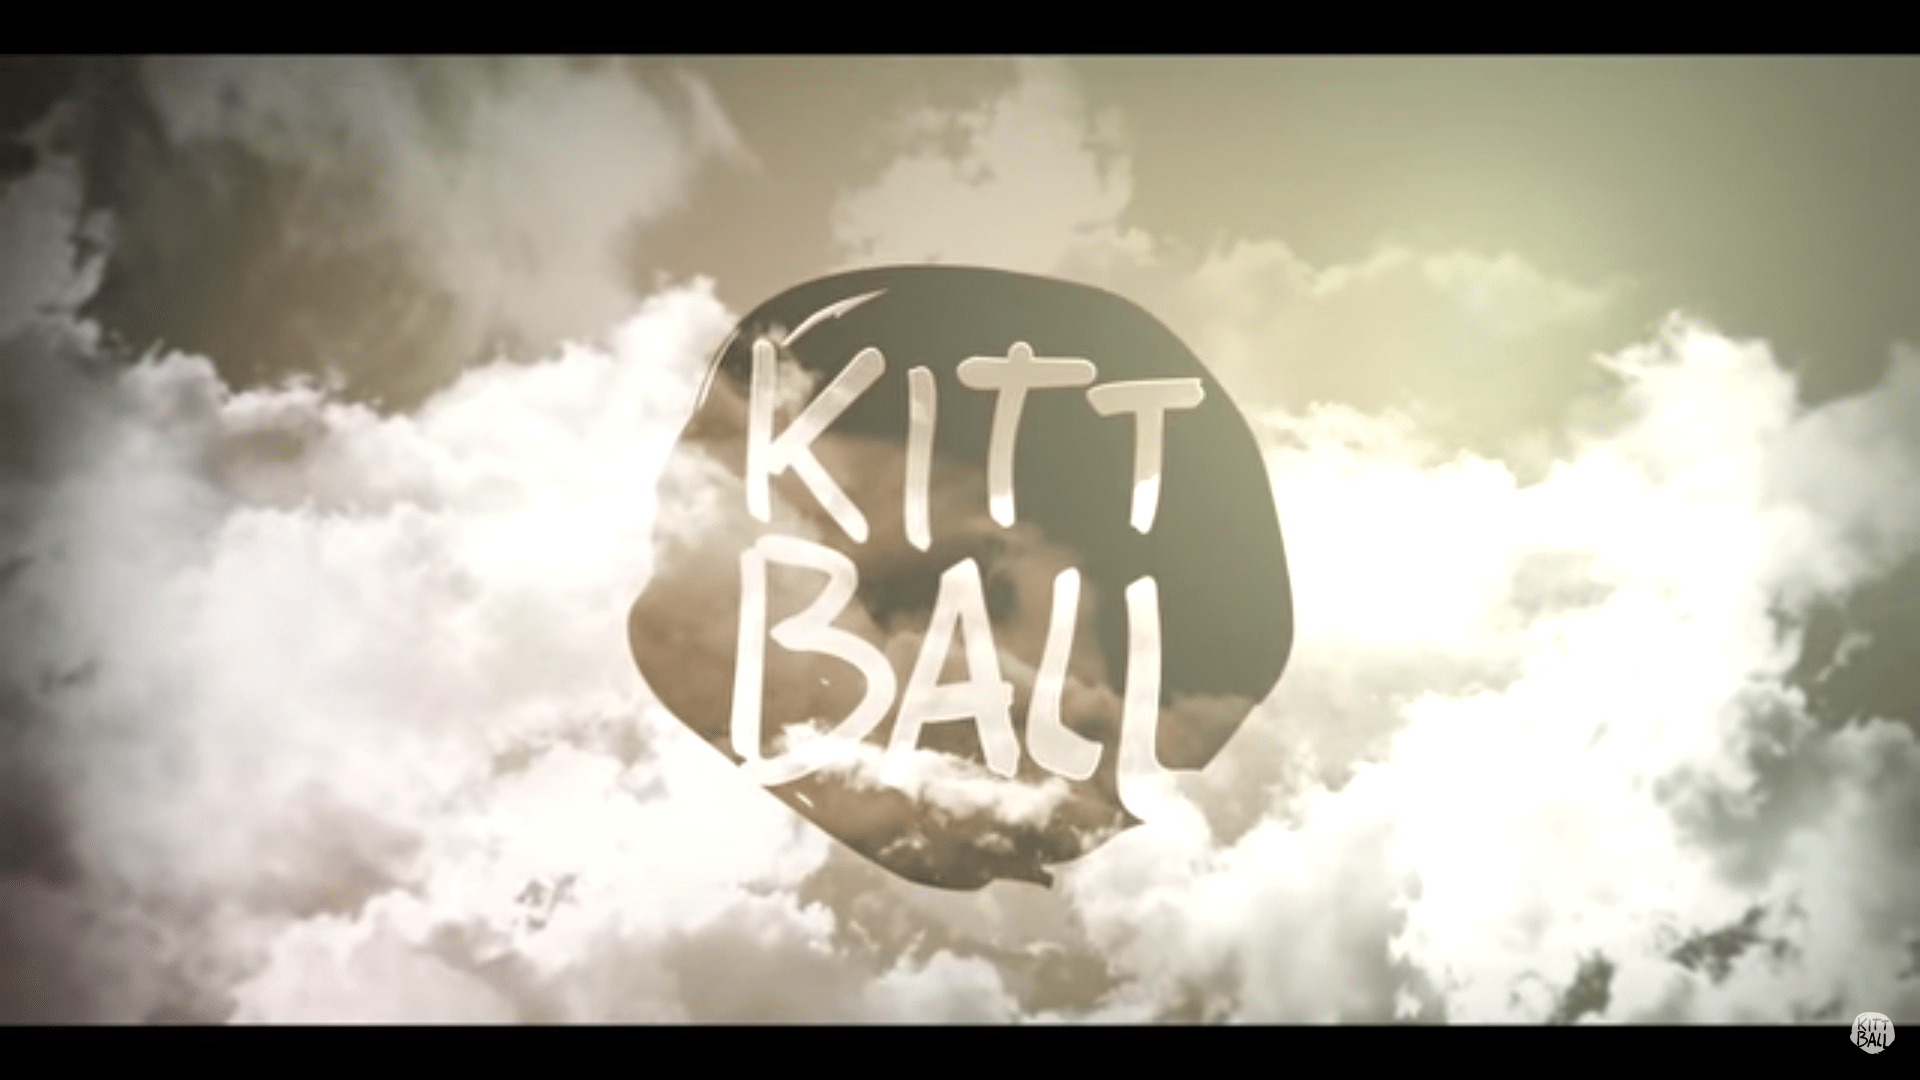 kitt-balll